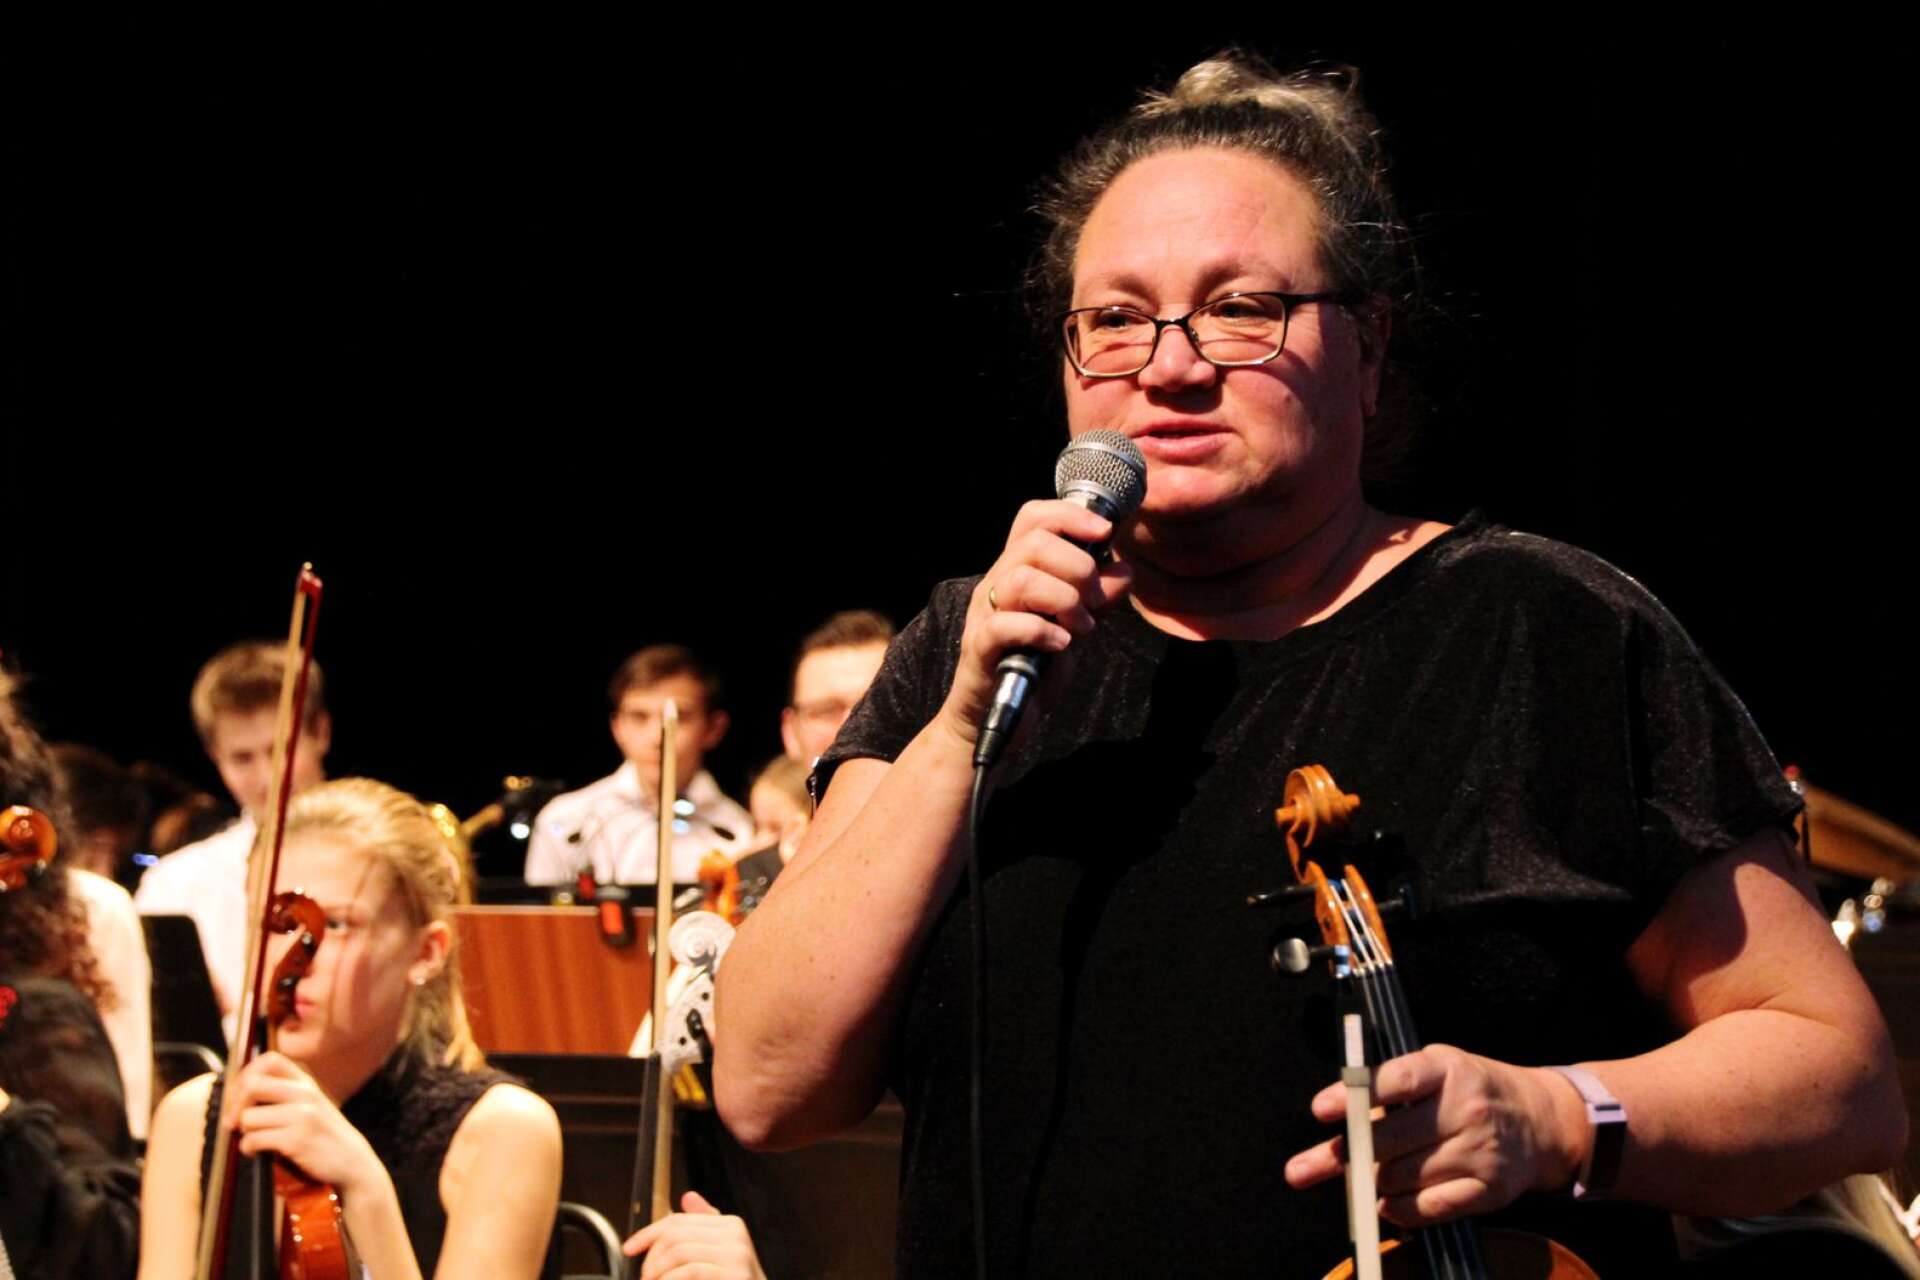 FLOU - ett orkestersamarbete mellan musik- och kulturskolor i Färgelanda, Lysekil, Orust och Uddevalla firar 20-årsjubileum opch hade konsert på Kulturbruket på Dal. 

Helen Stark, musiklärare.